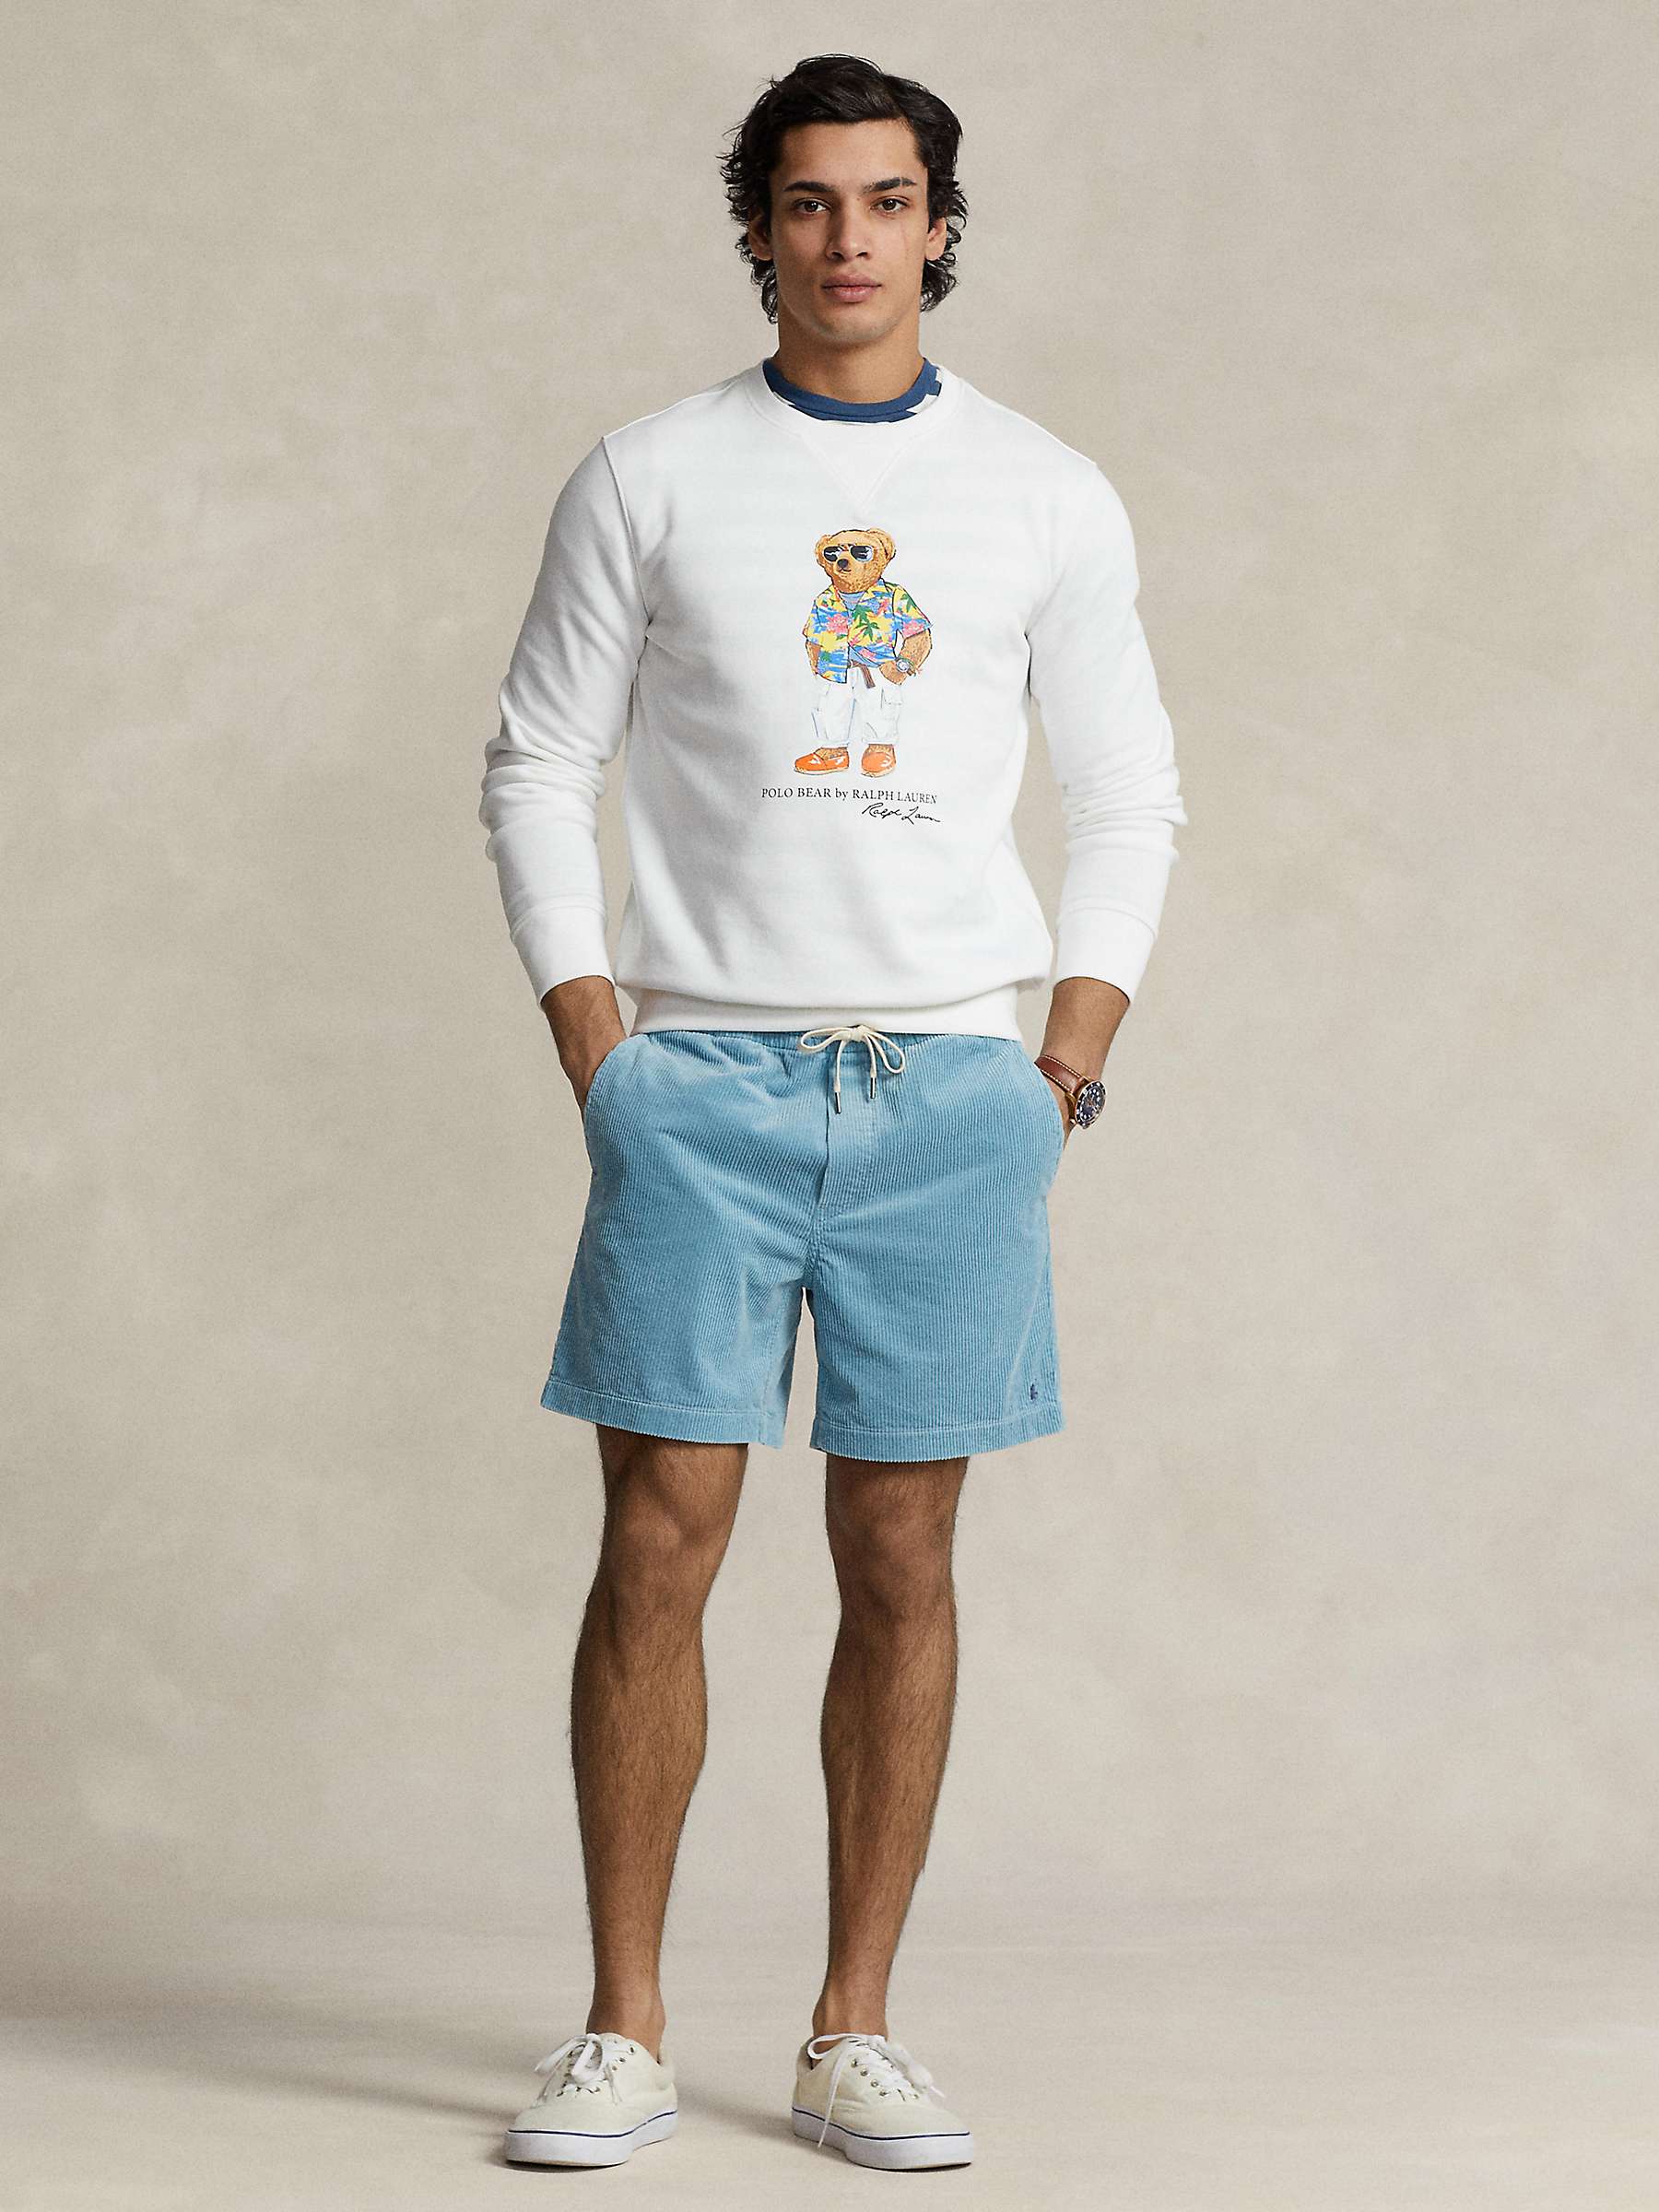 Buy Ralph Lauren Polo Bear Sweatshirt Online at johnlewis.com